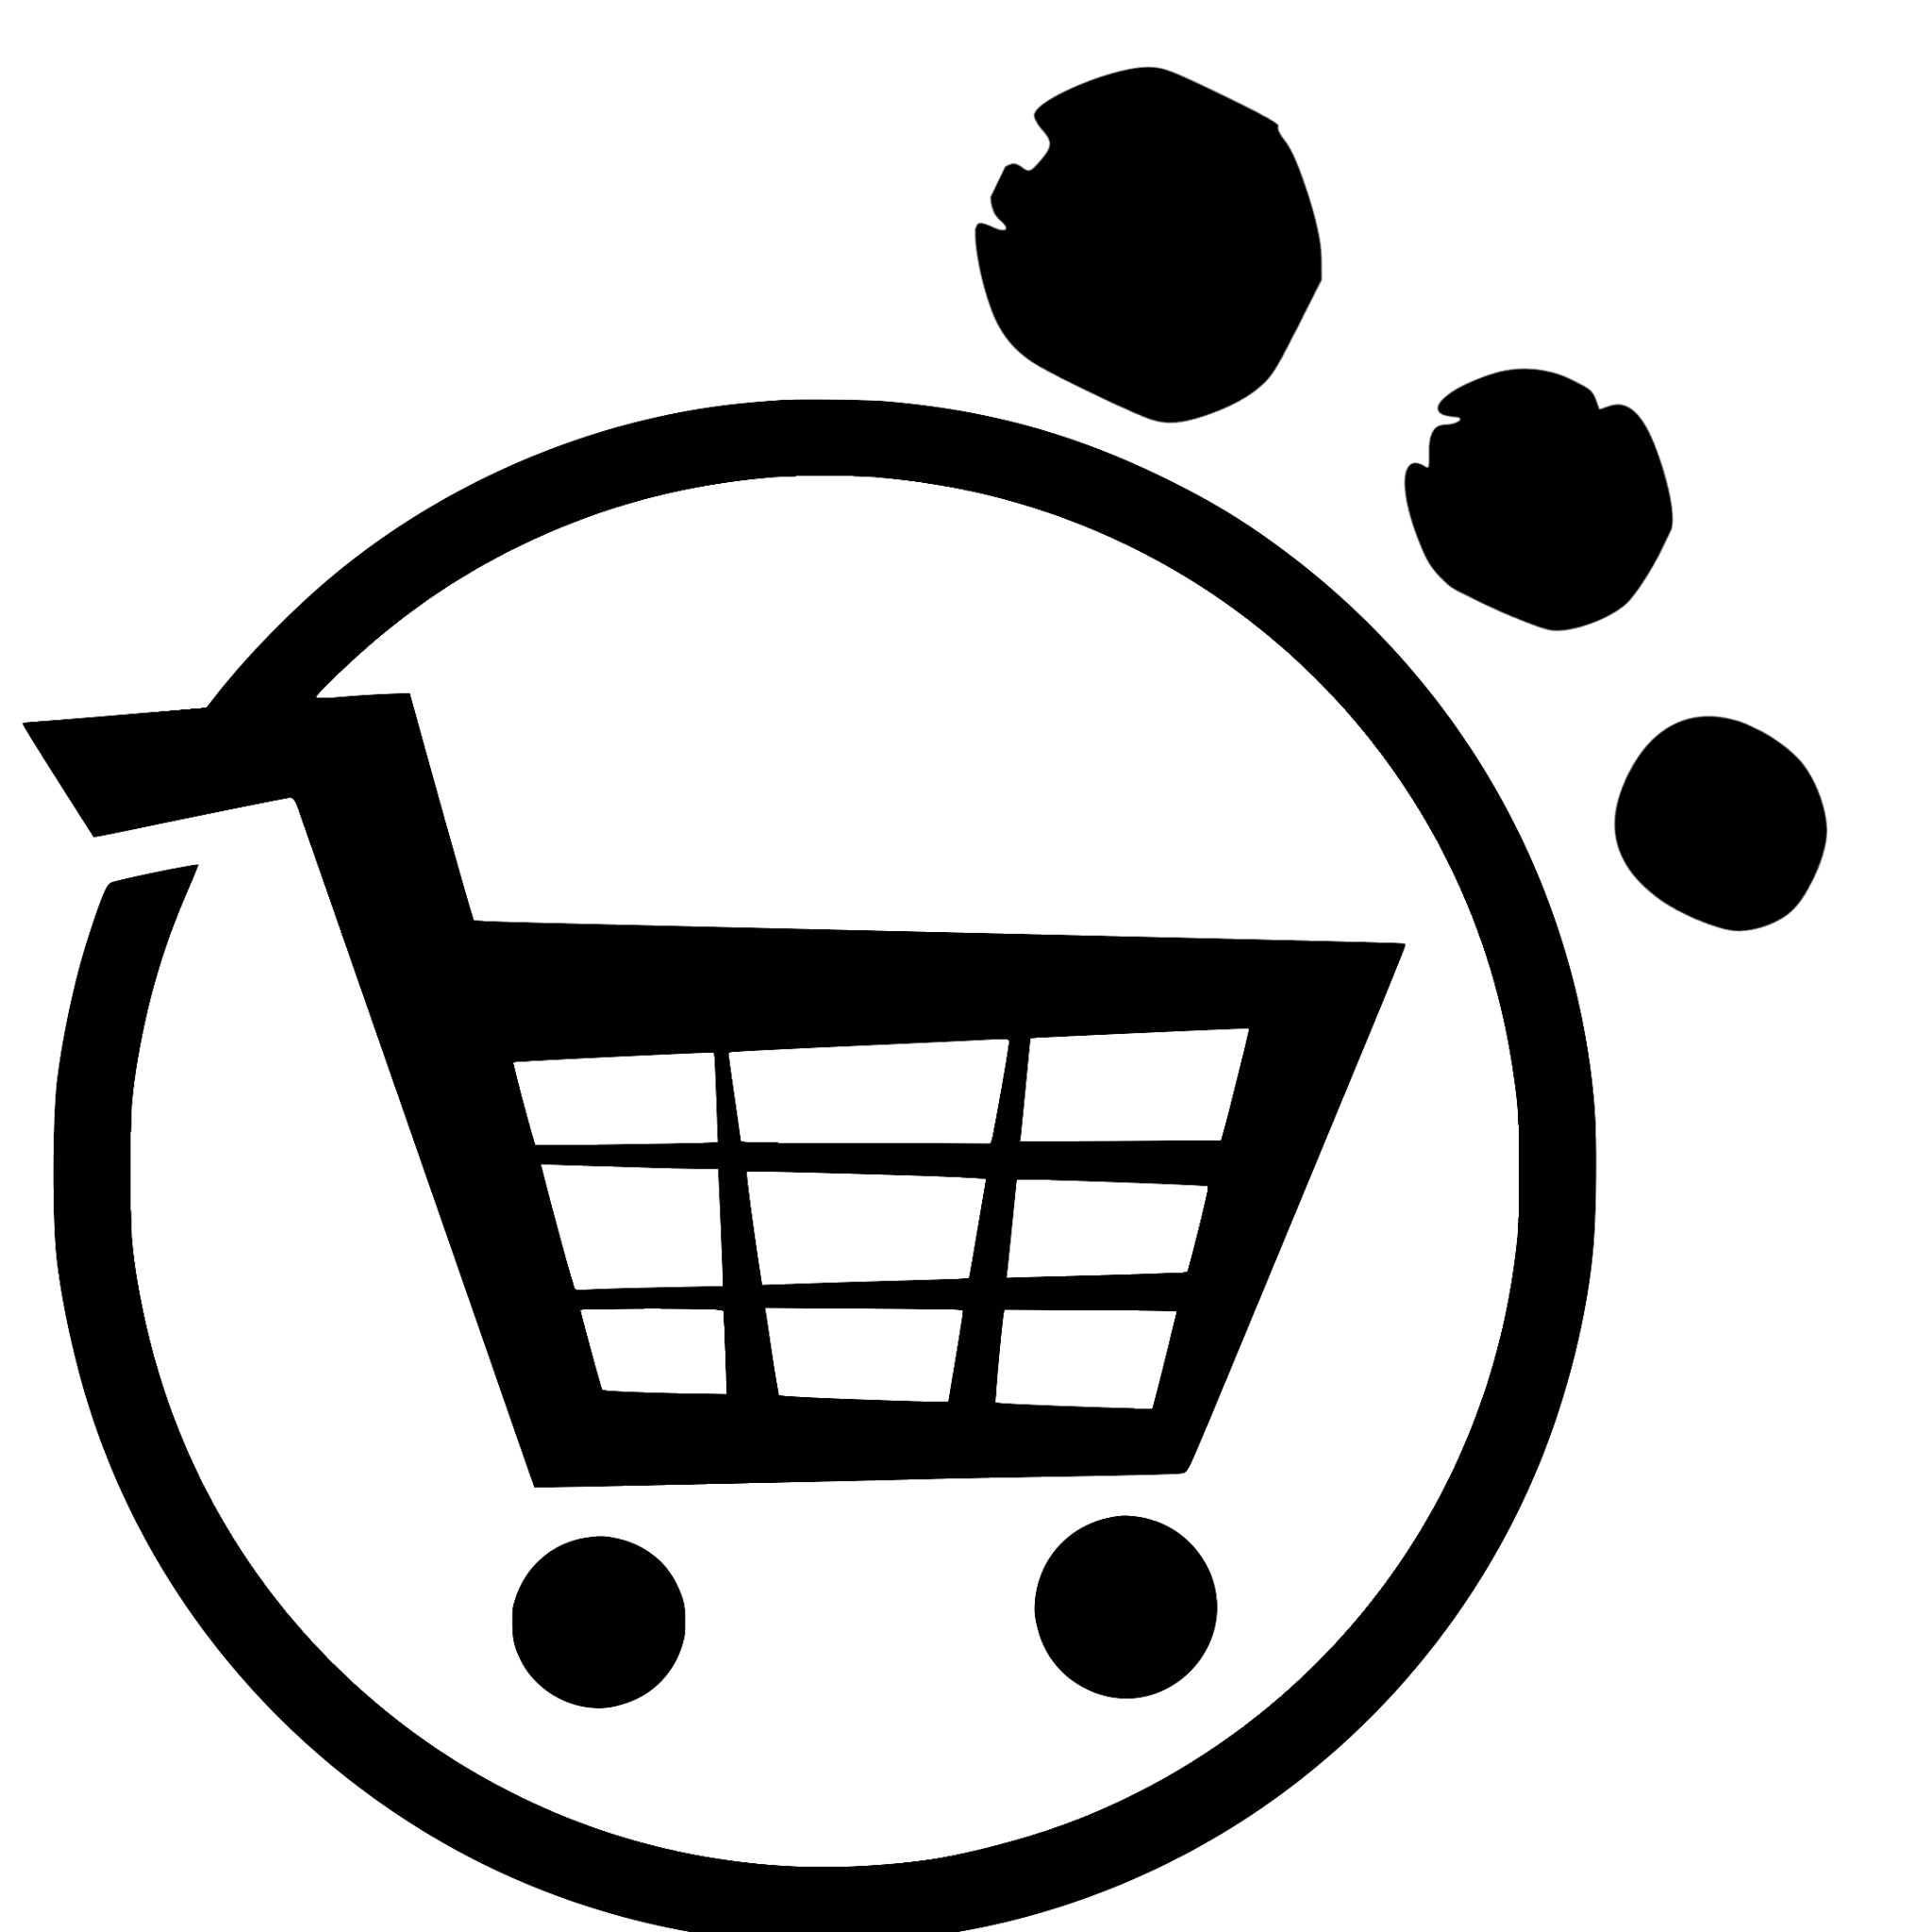 E-commerce Basic